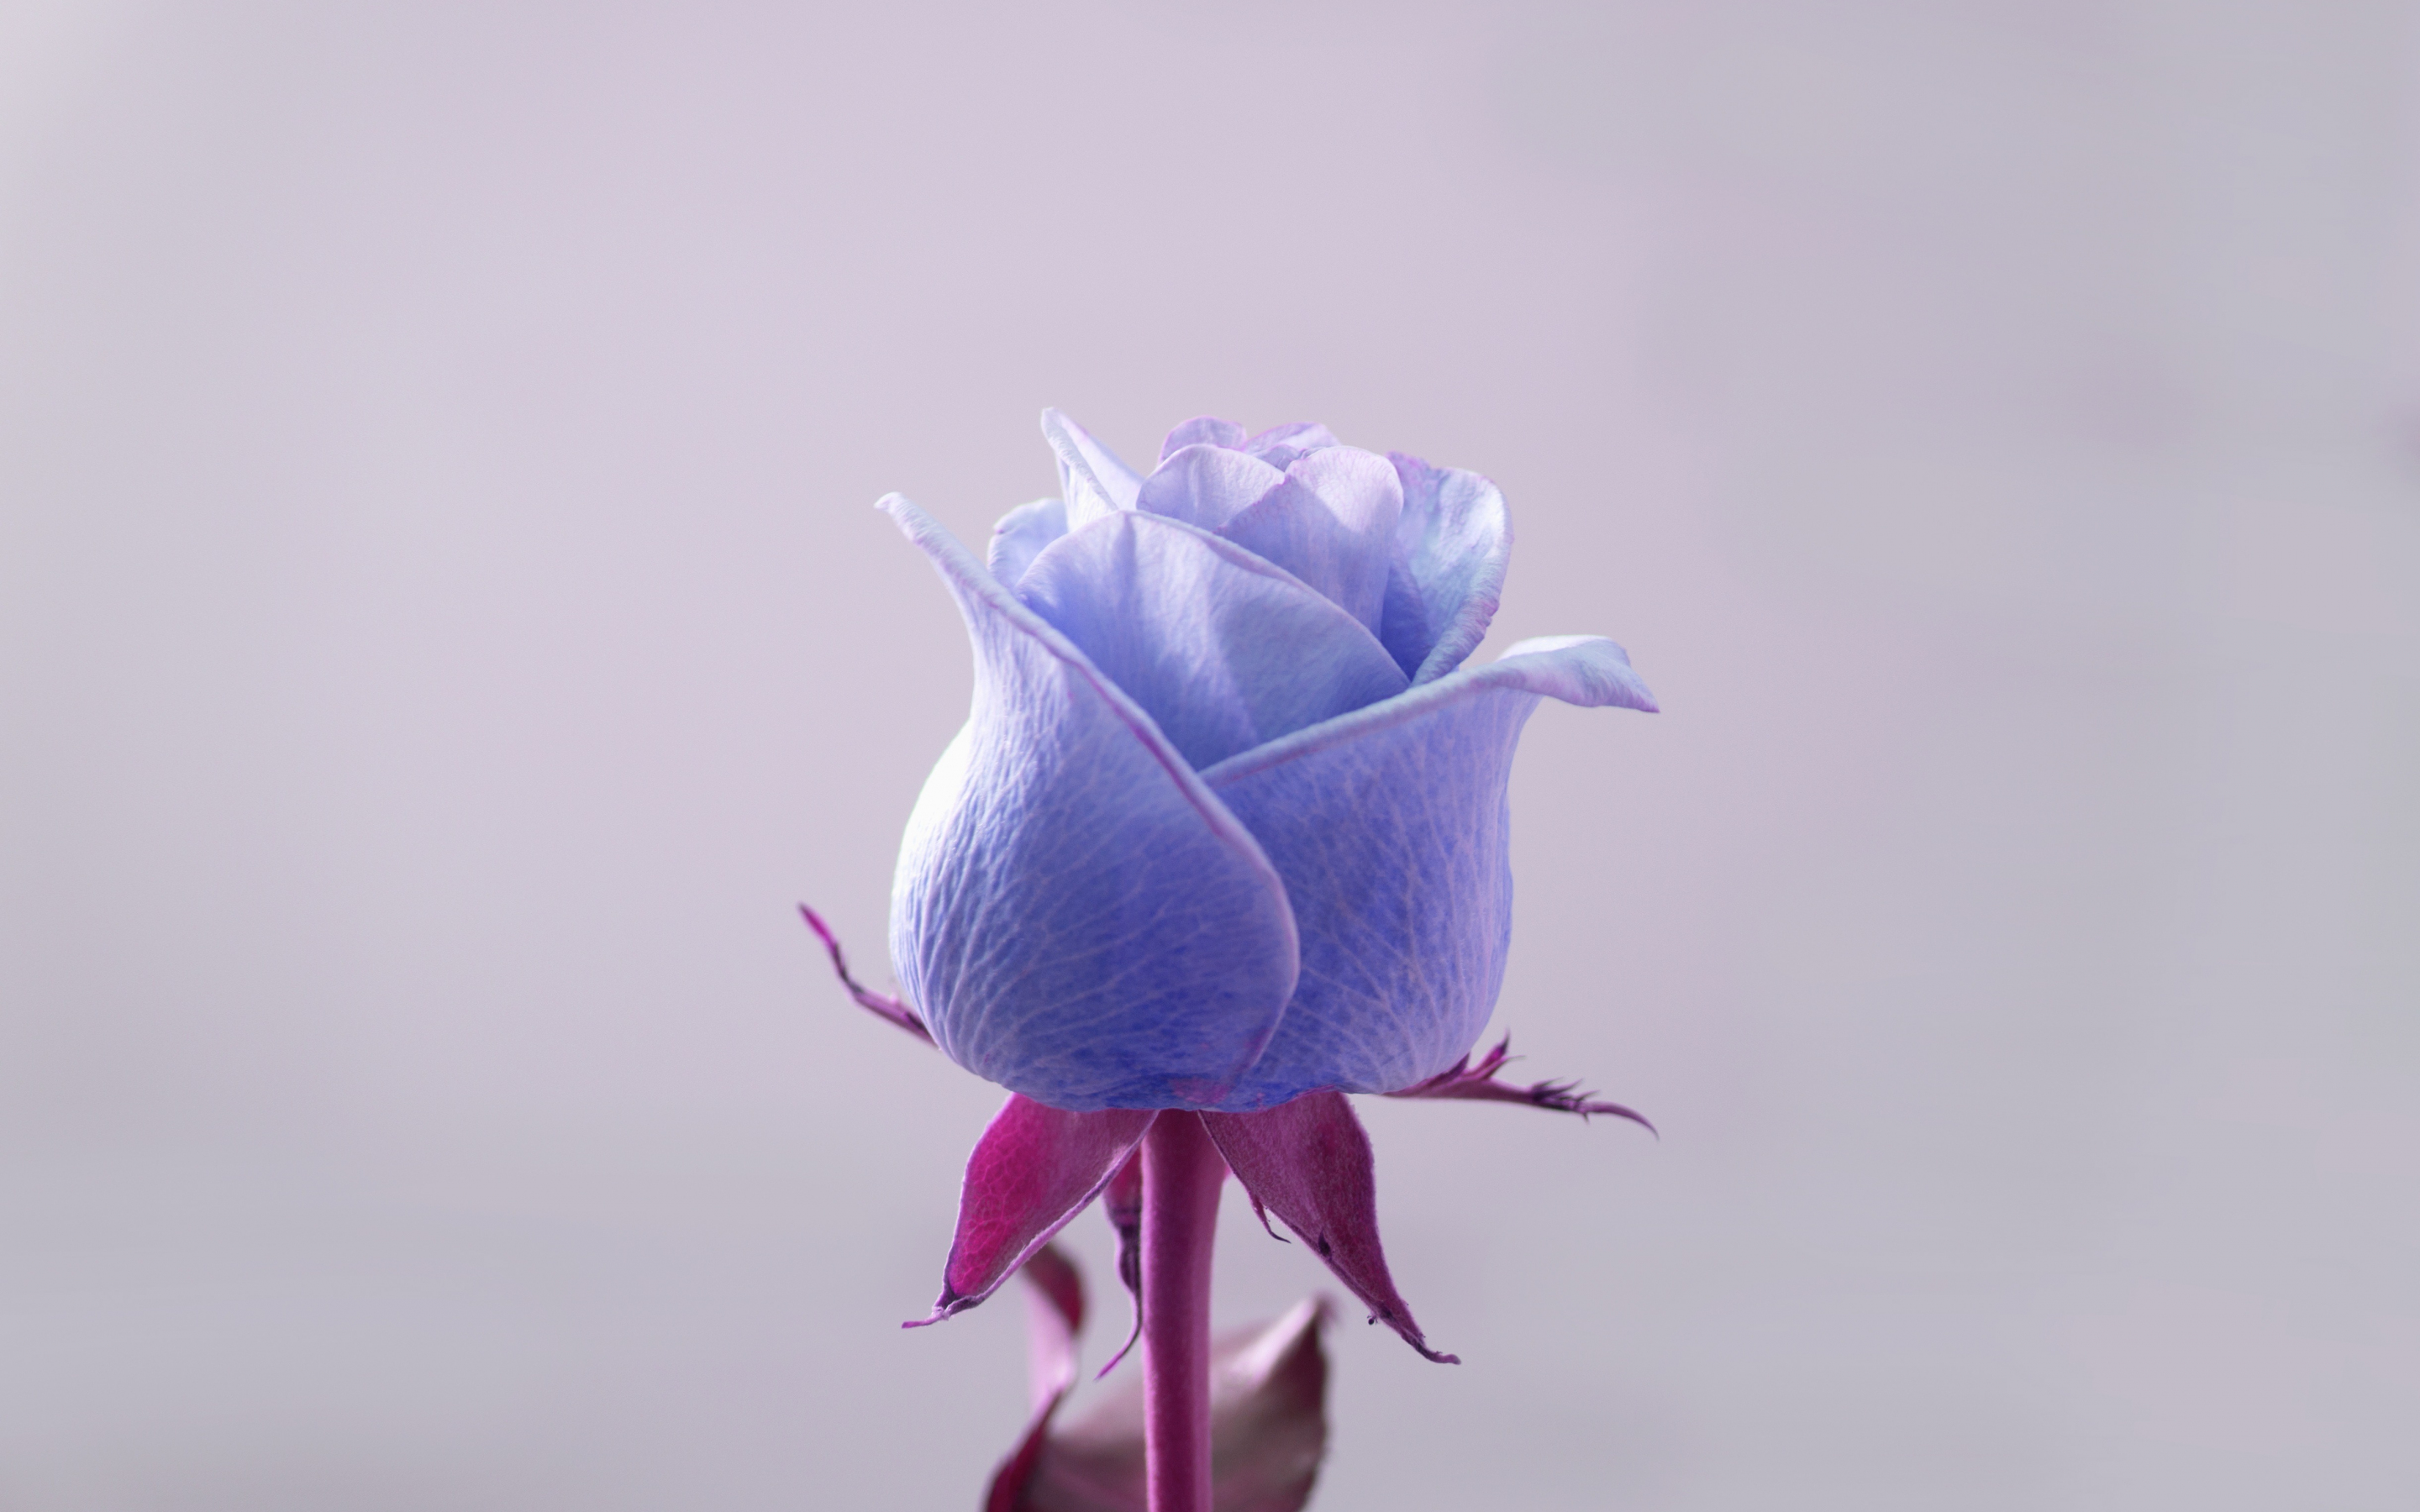 Blue rose, flower, bud, 2880x1800 wallpaper